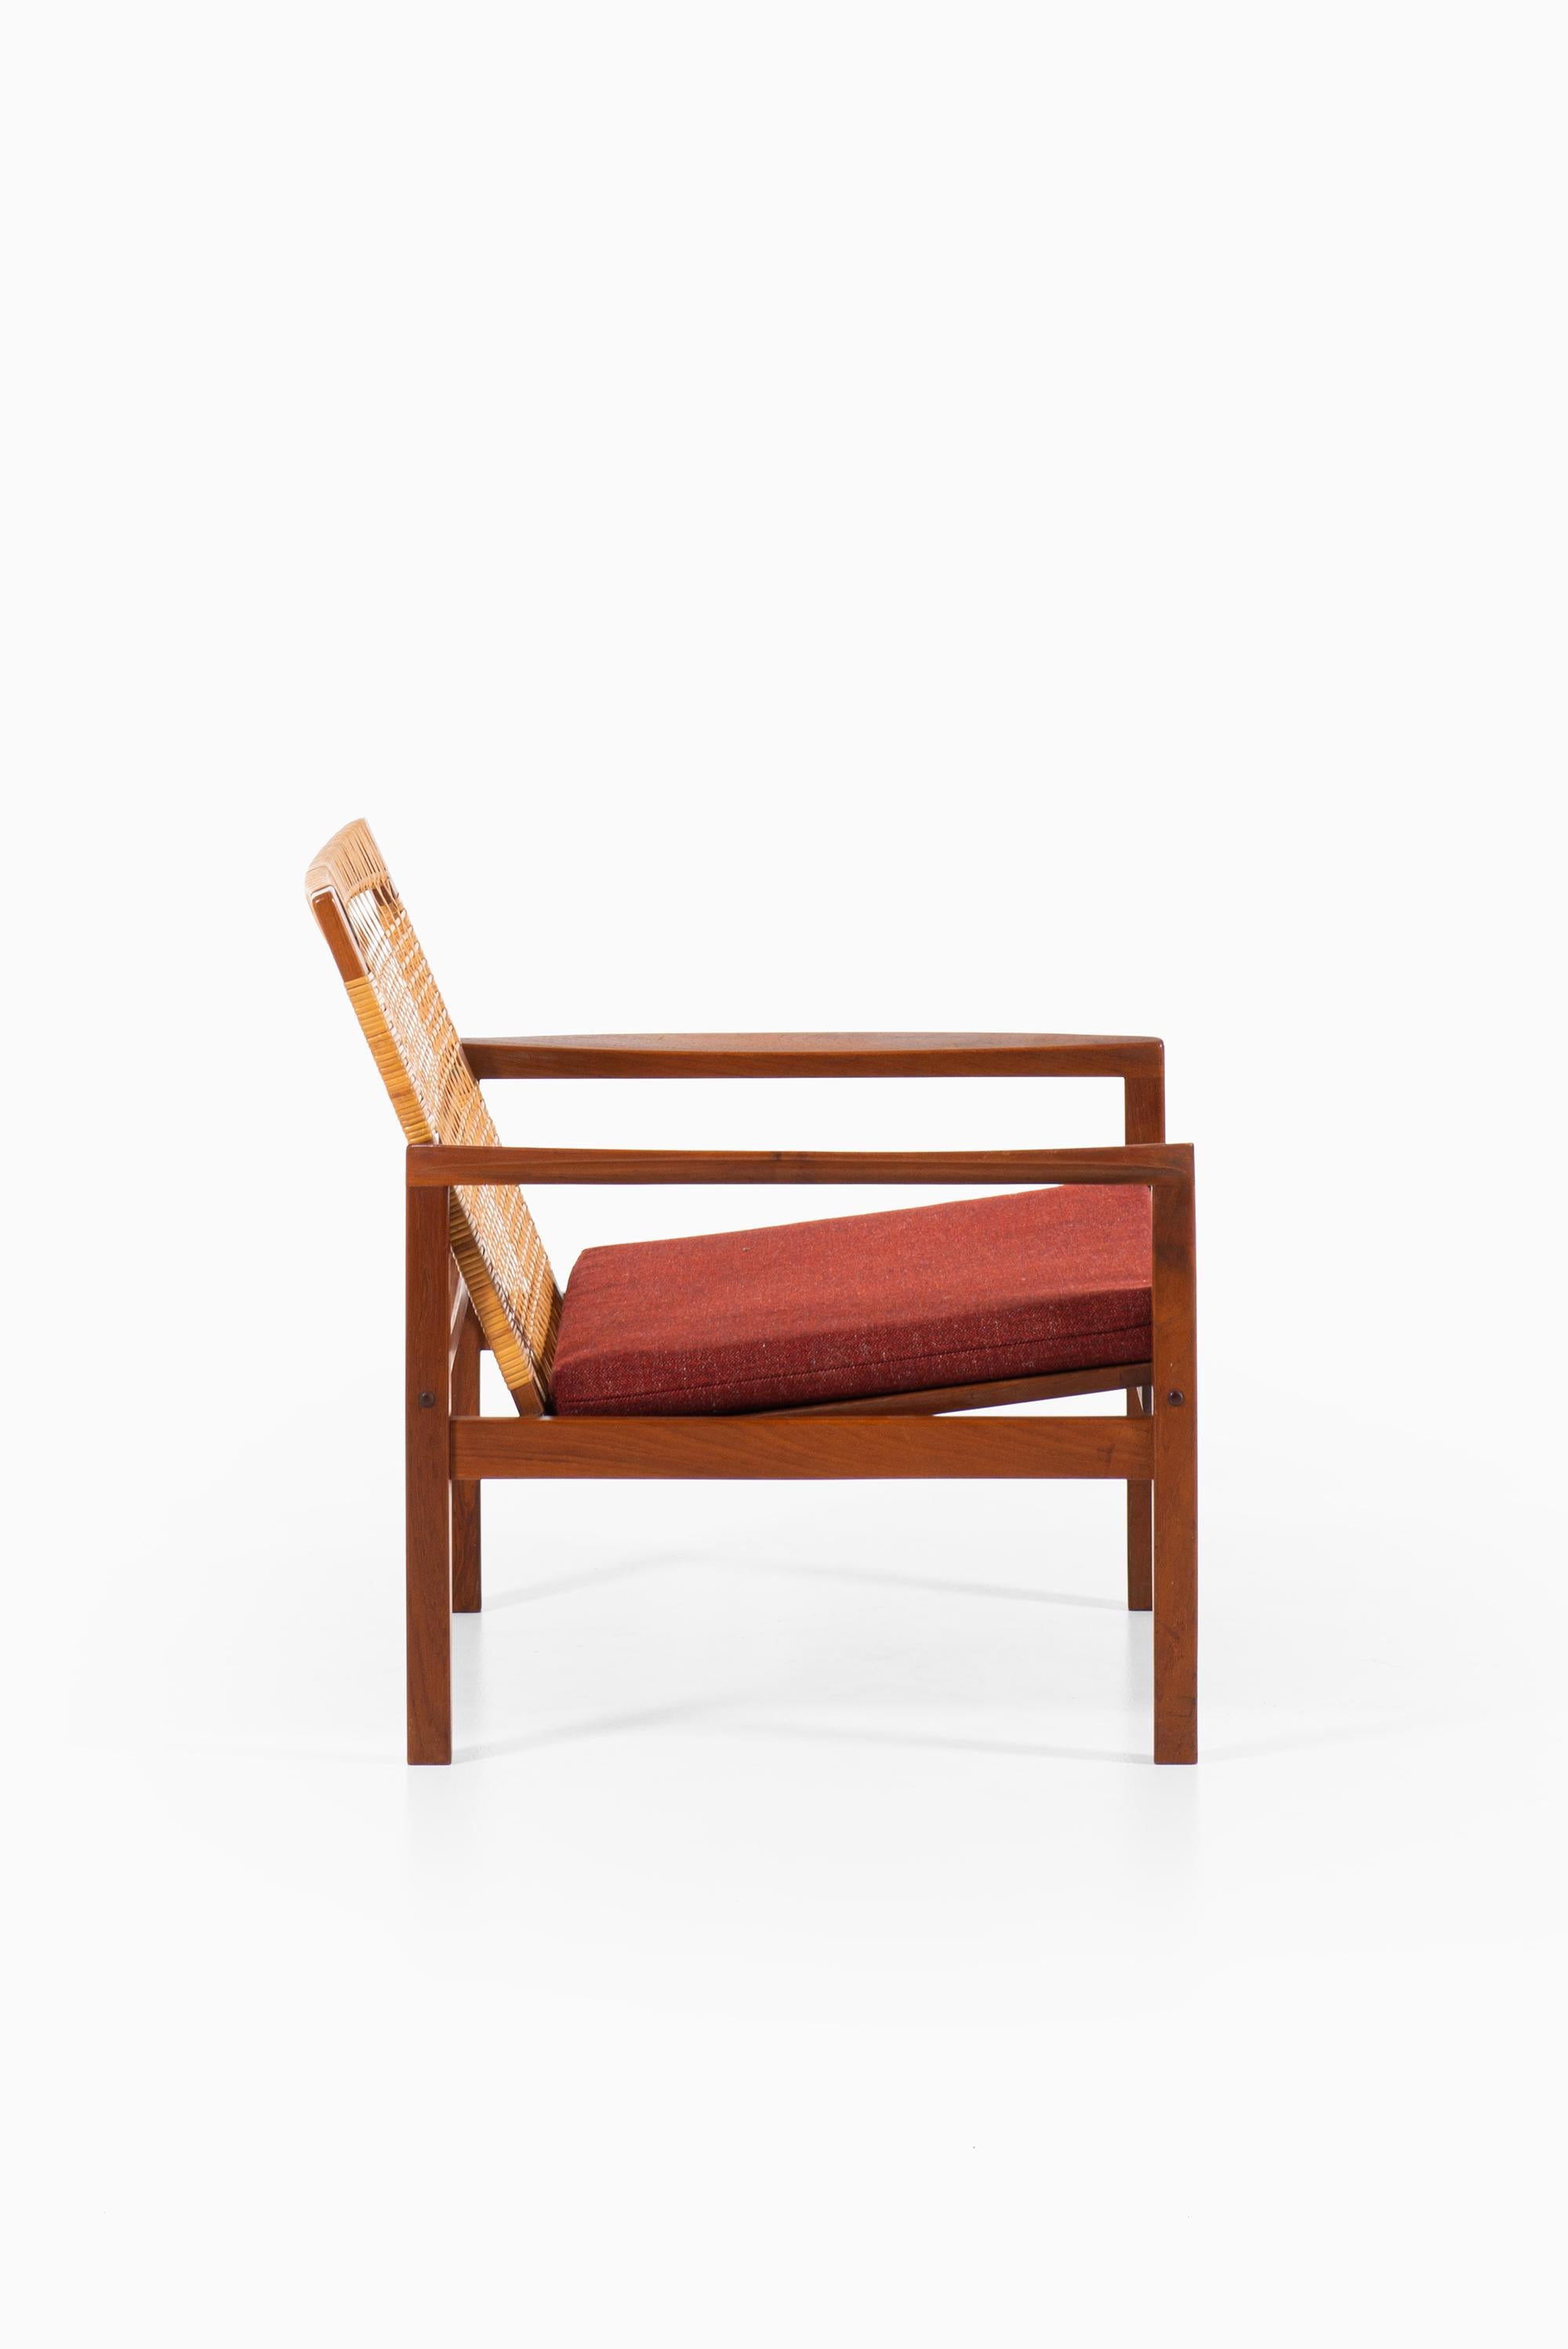 Mid-20th Century Hans Olsen Easy Chairs Model 519 by Juul Kristensen in Denmark